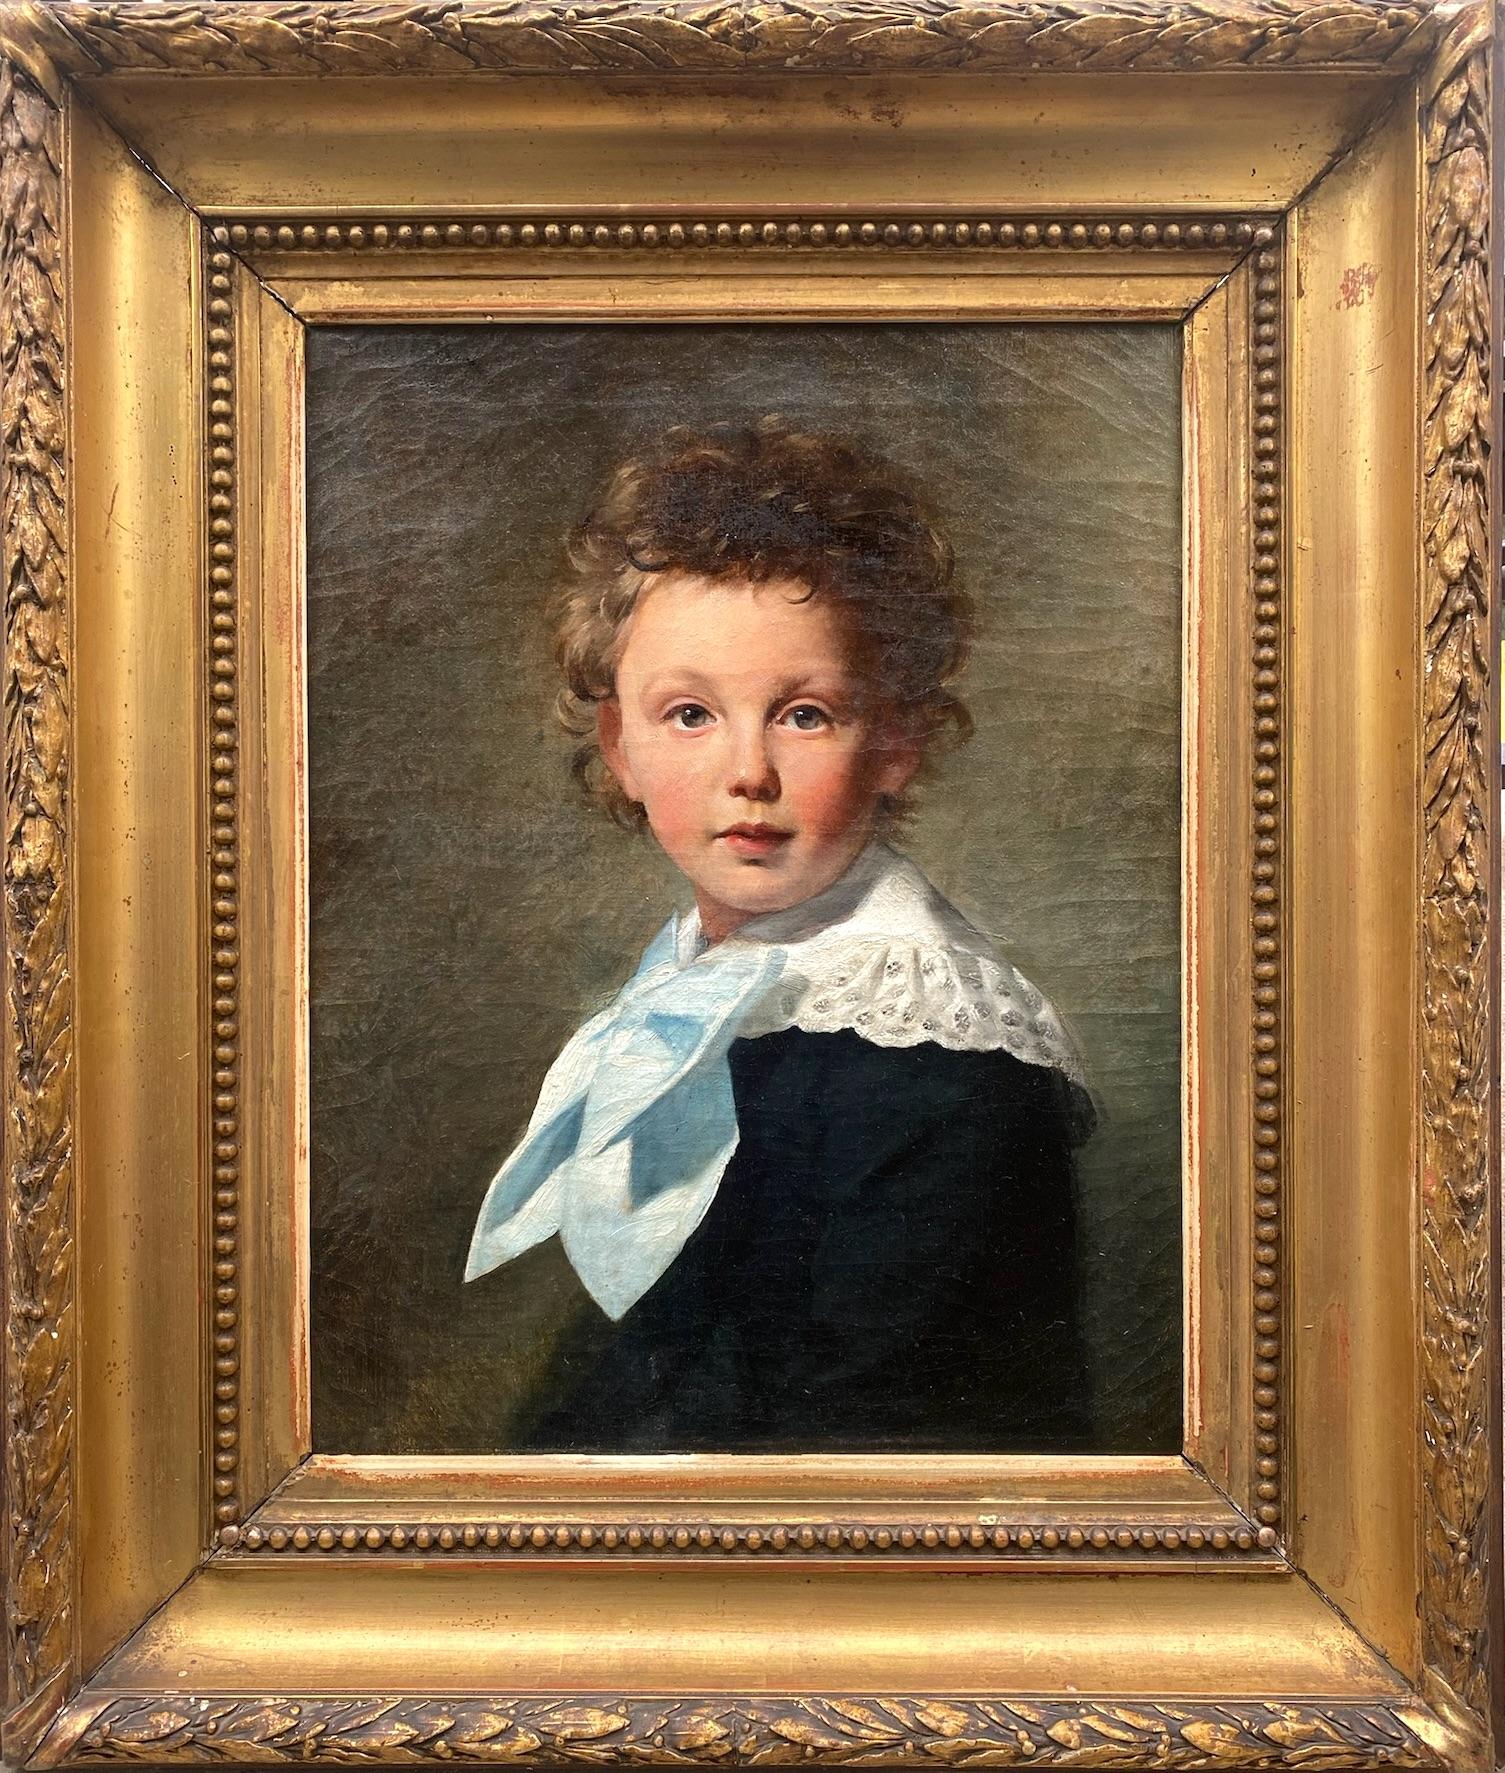 The Blue bow: ein kleiner Junge mit zerbrechlichem Haar, naturalistisches Porträt-Ölgemälde